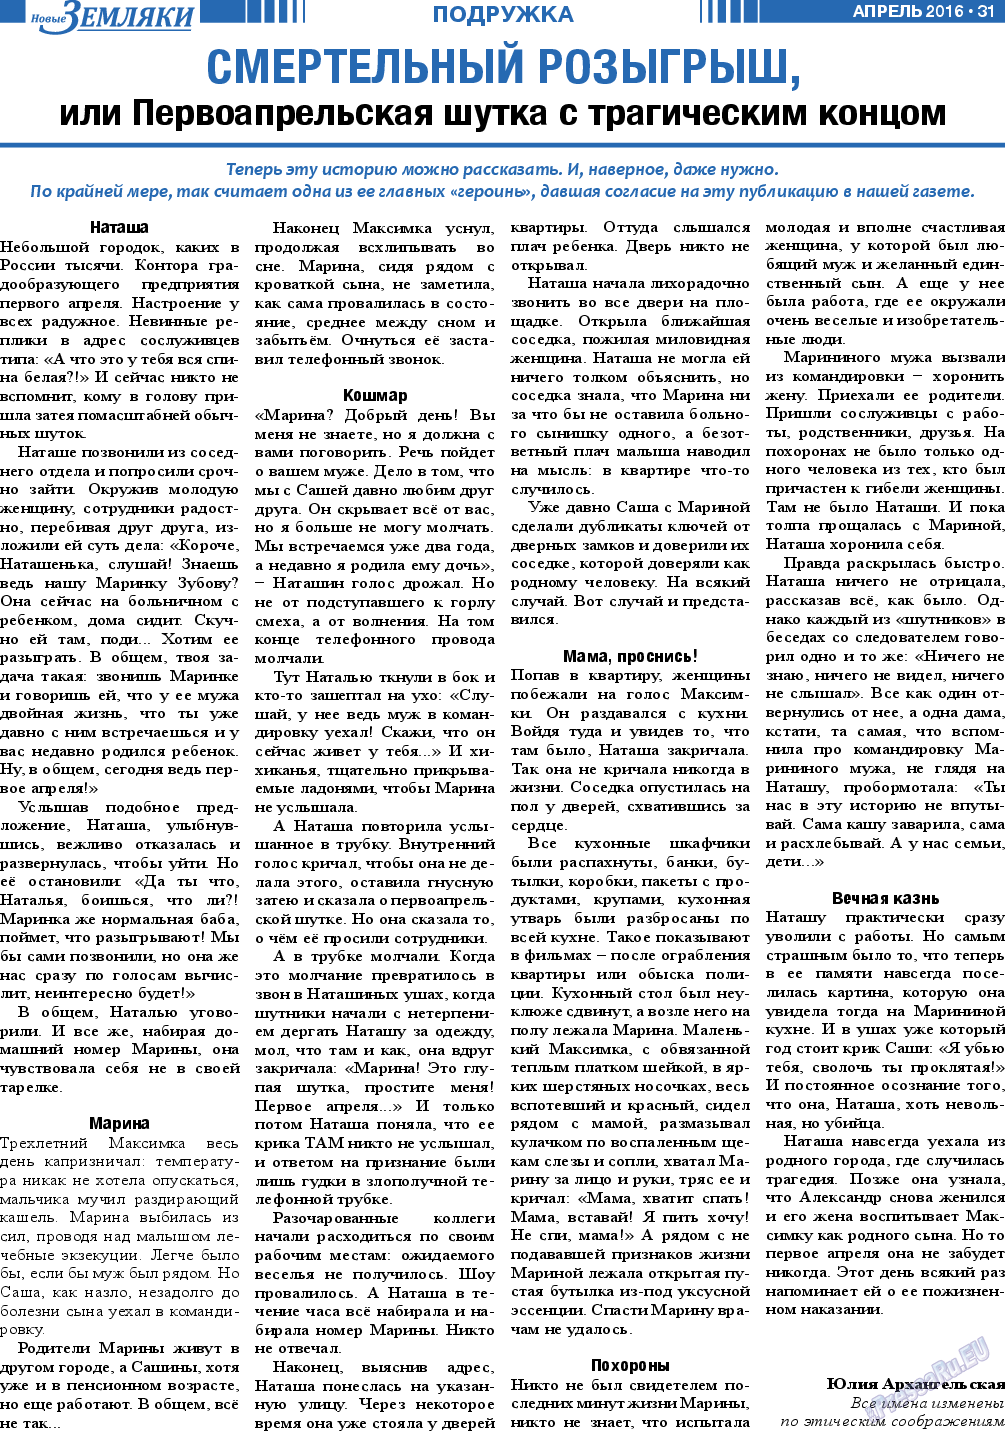 Новые Земляки (газета). 2016 год, номер 4, стр. 31